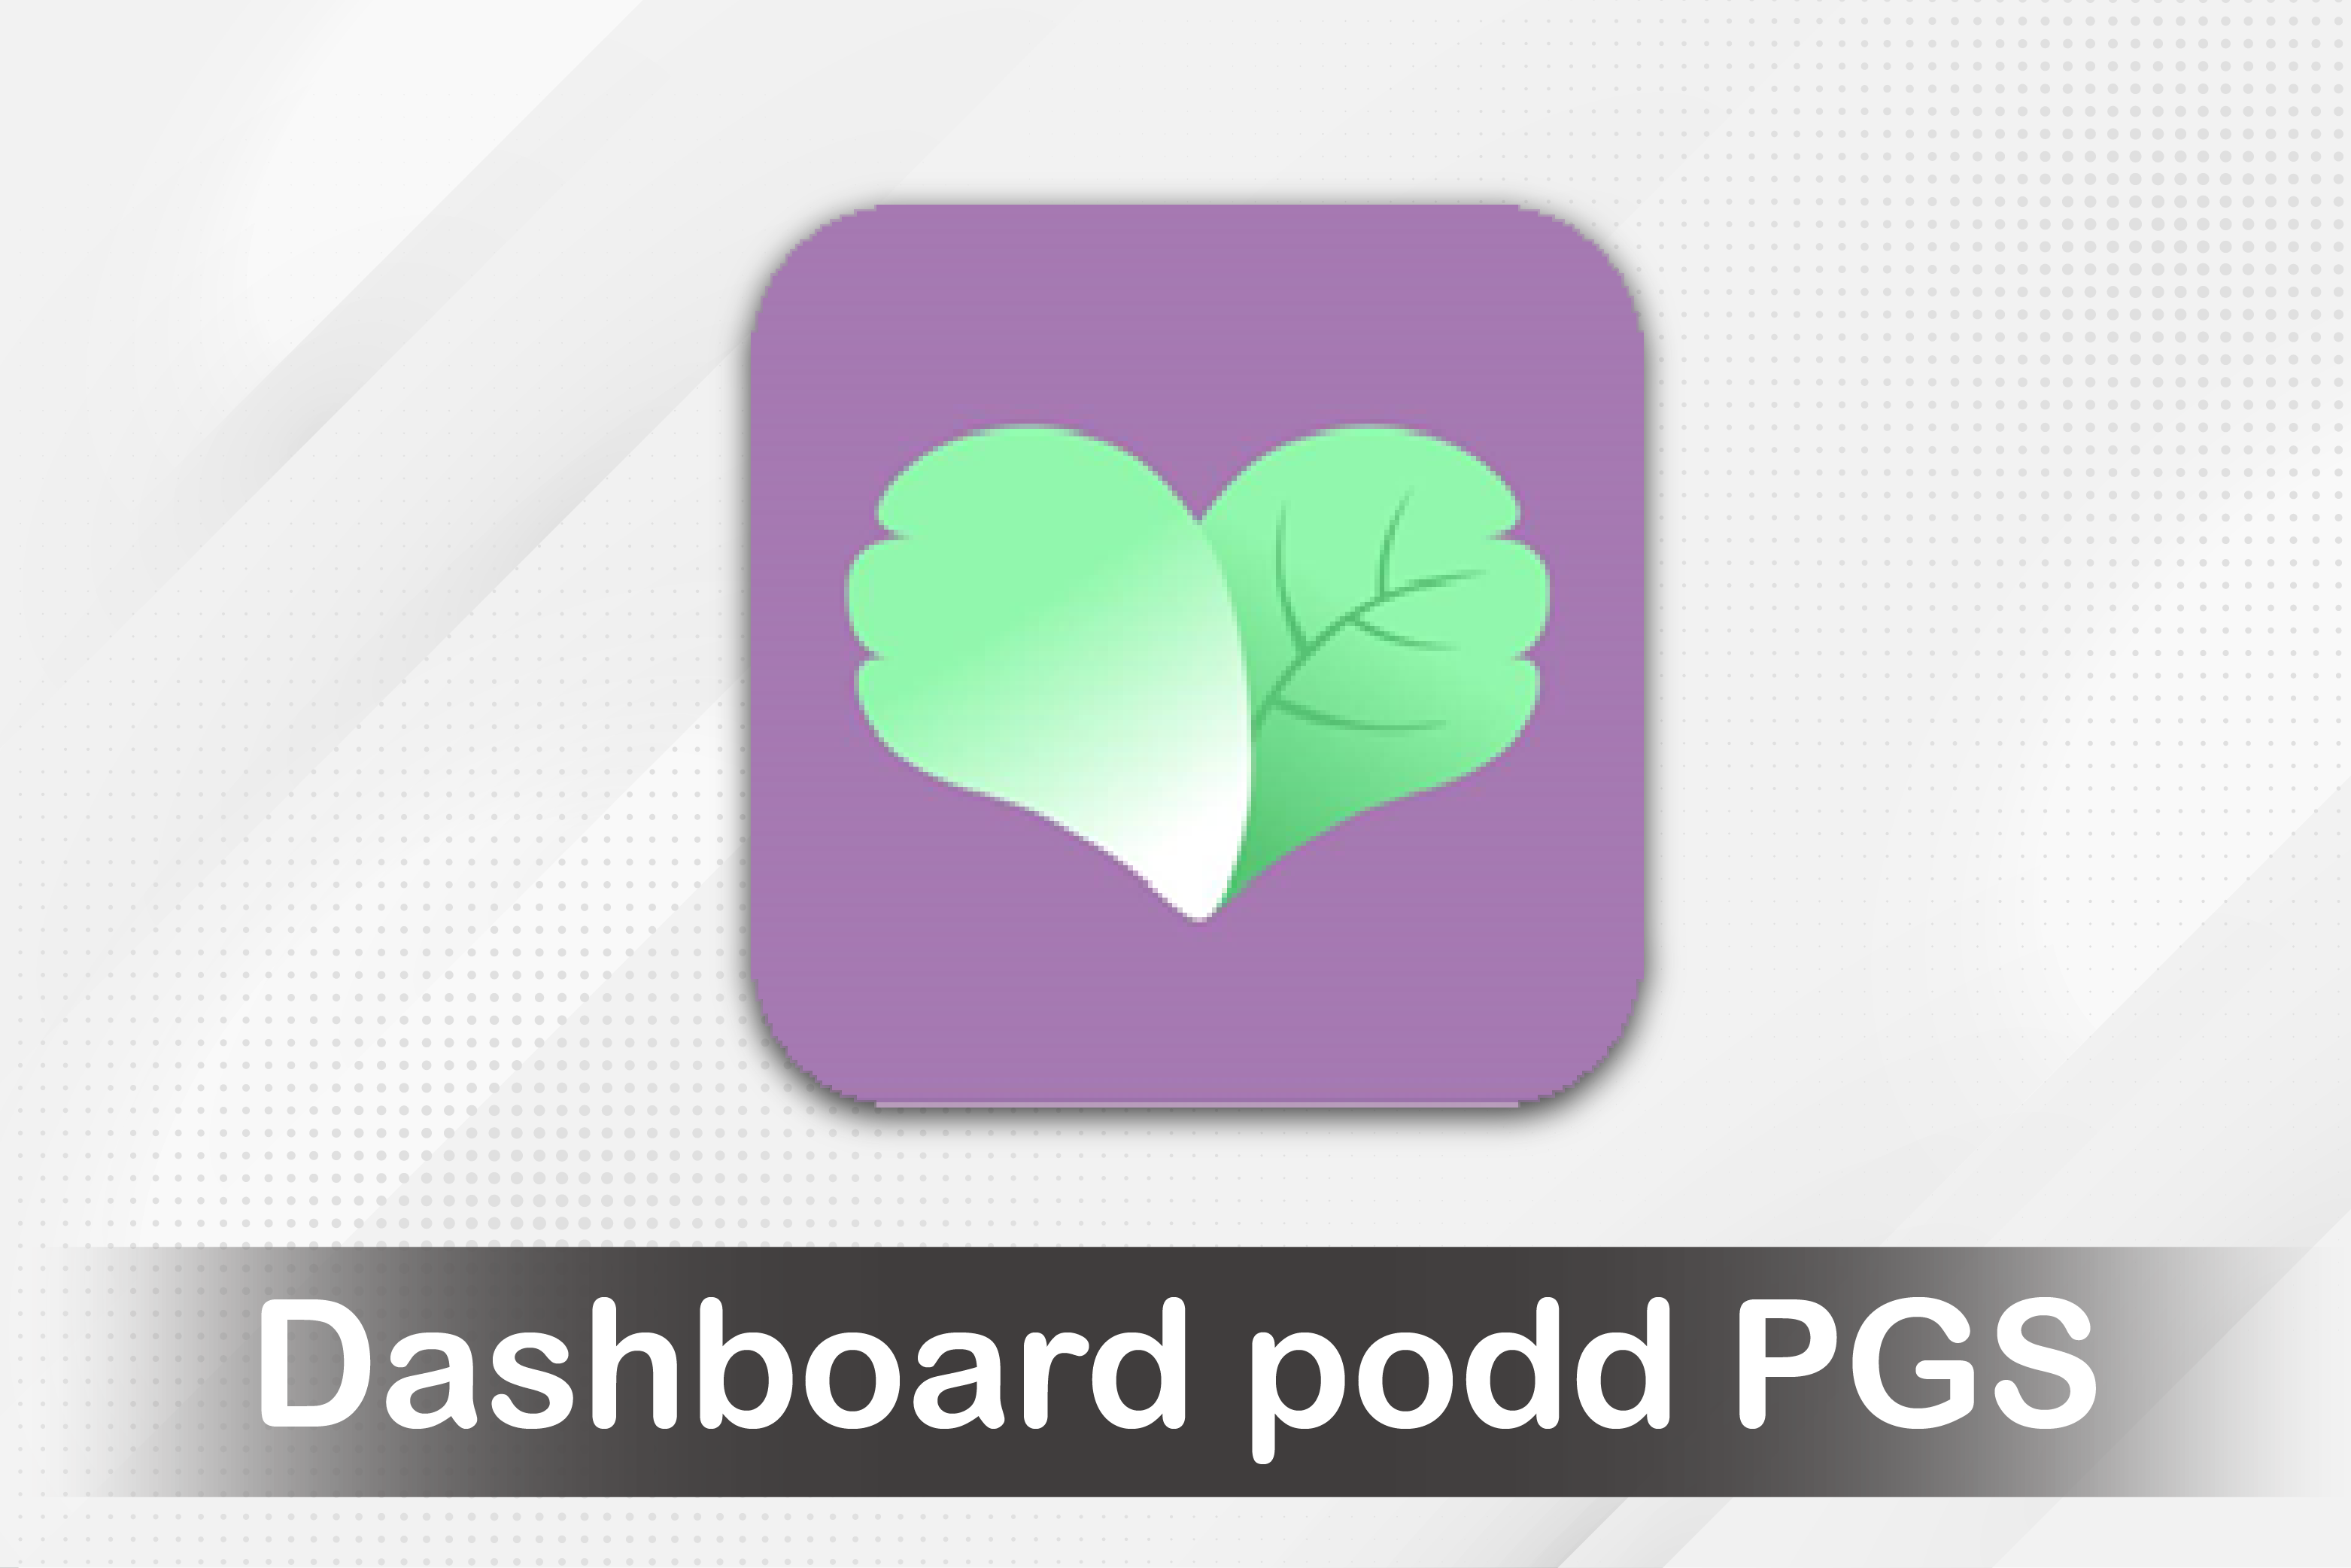 podd PGS Dashboard